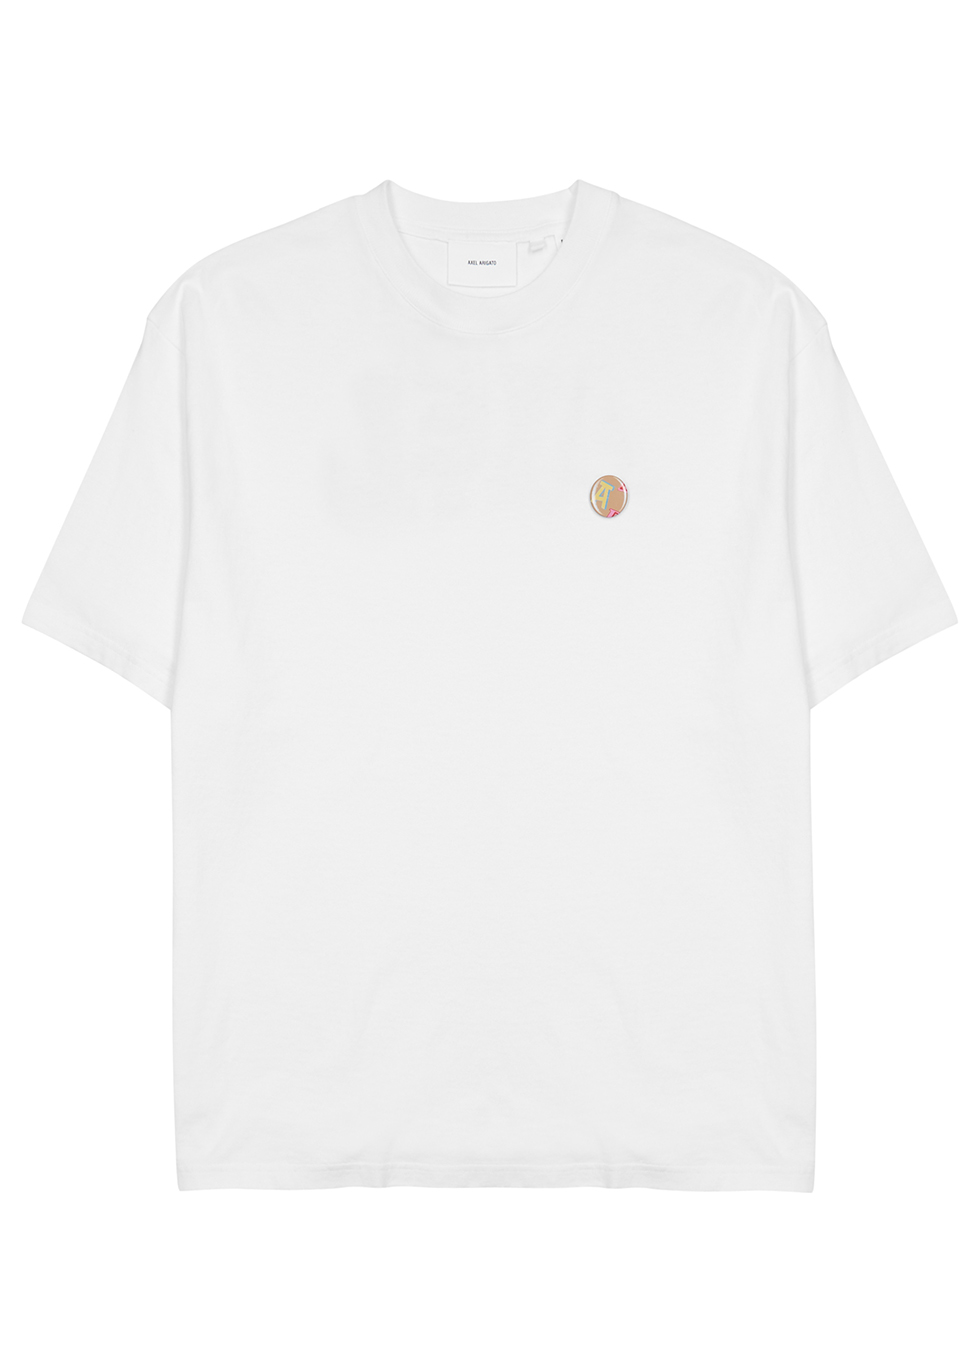 Axel Arigato Acronym white cotton T-shirt